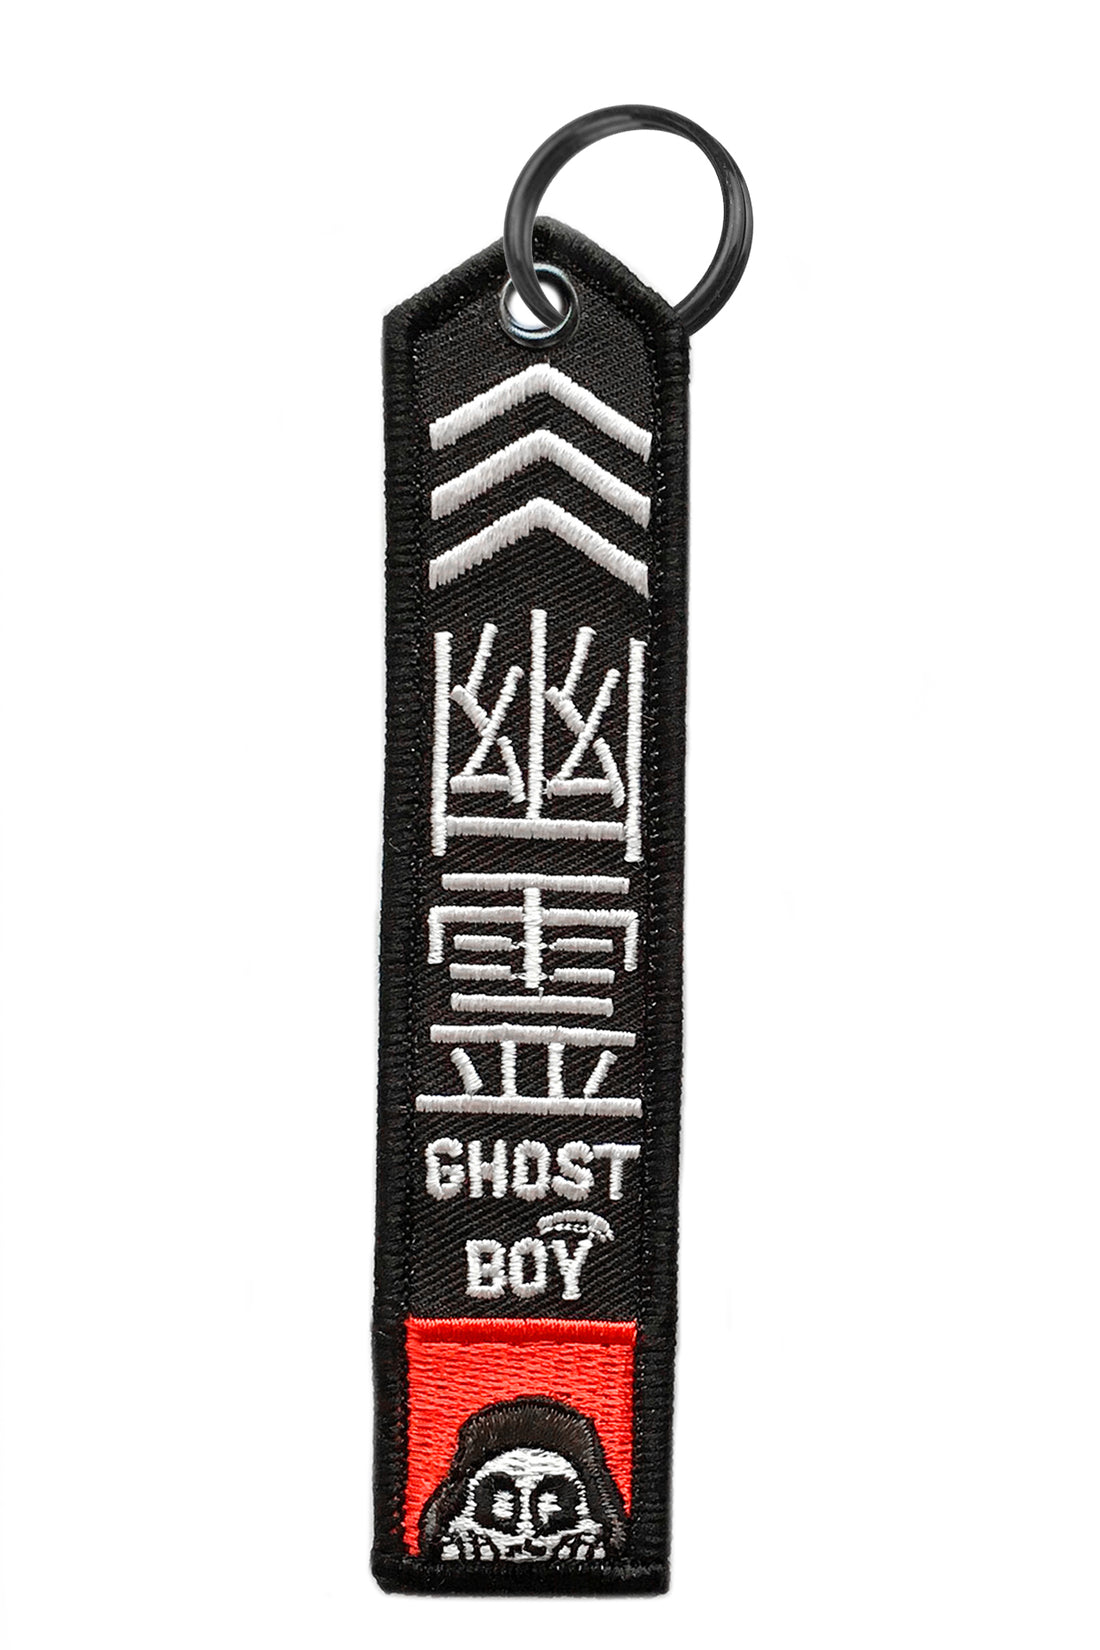 "Ghostboy" Flight Tag